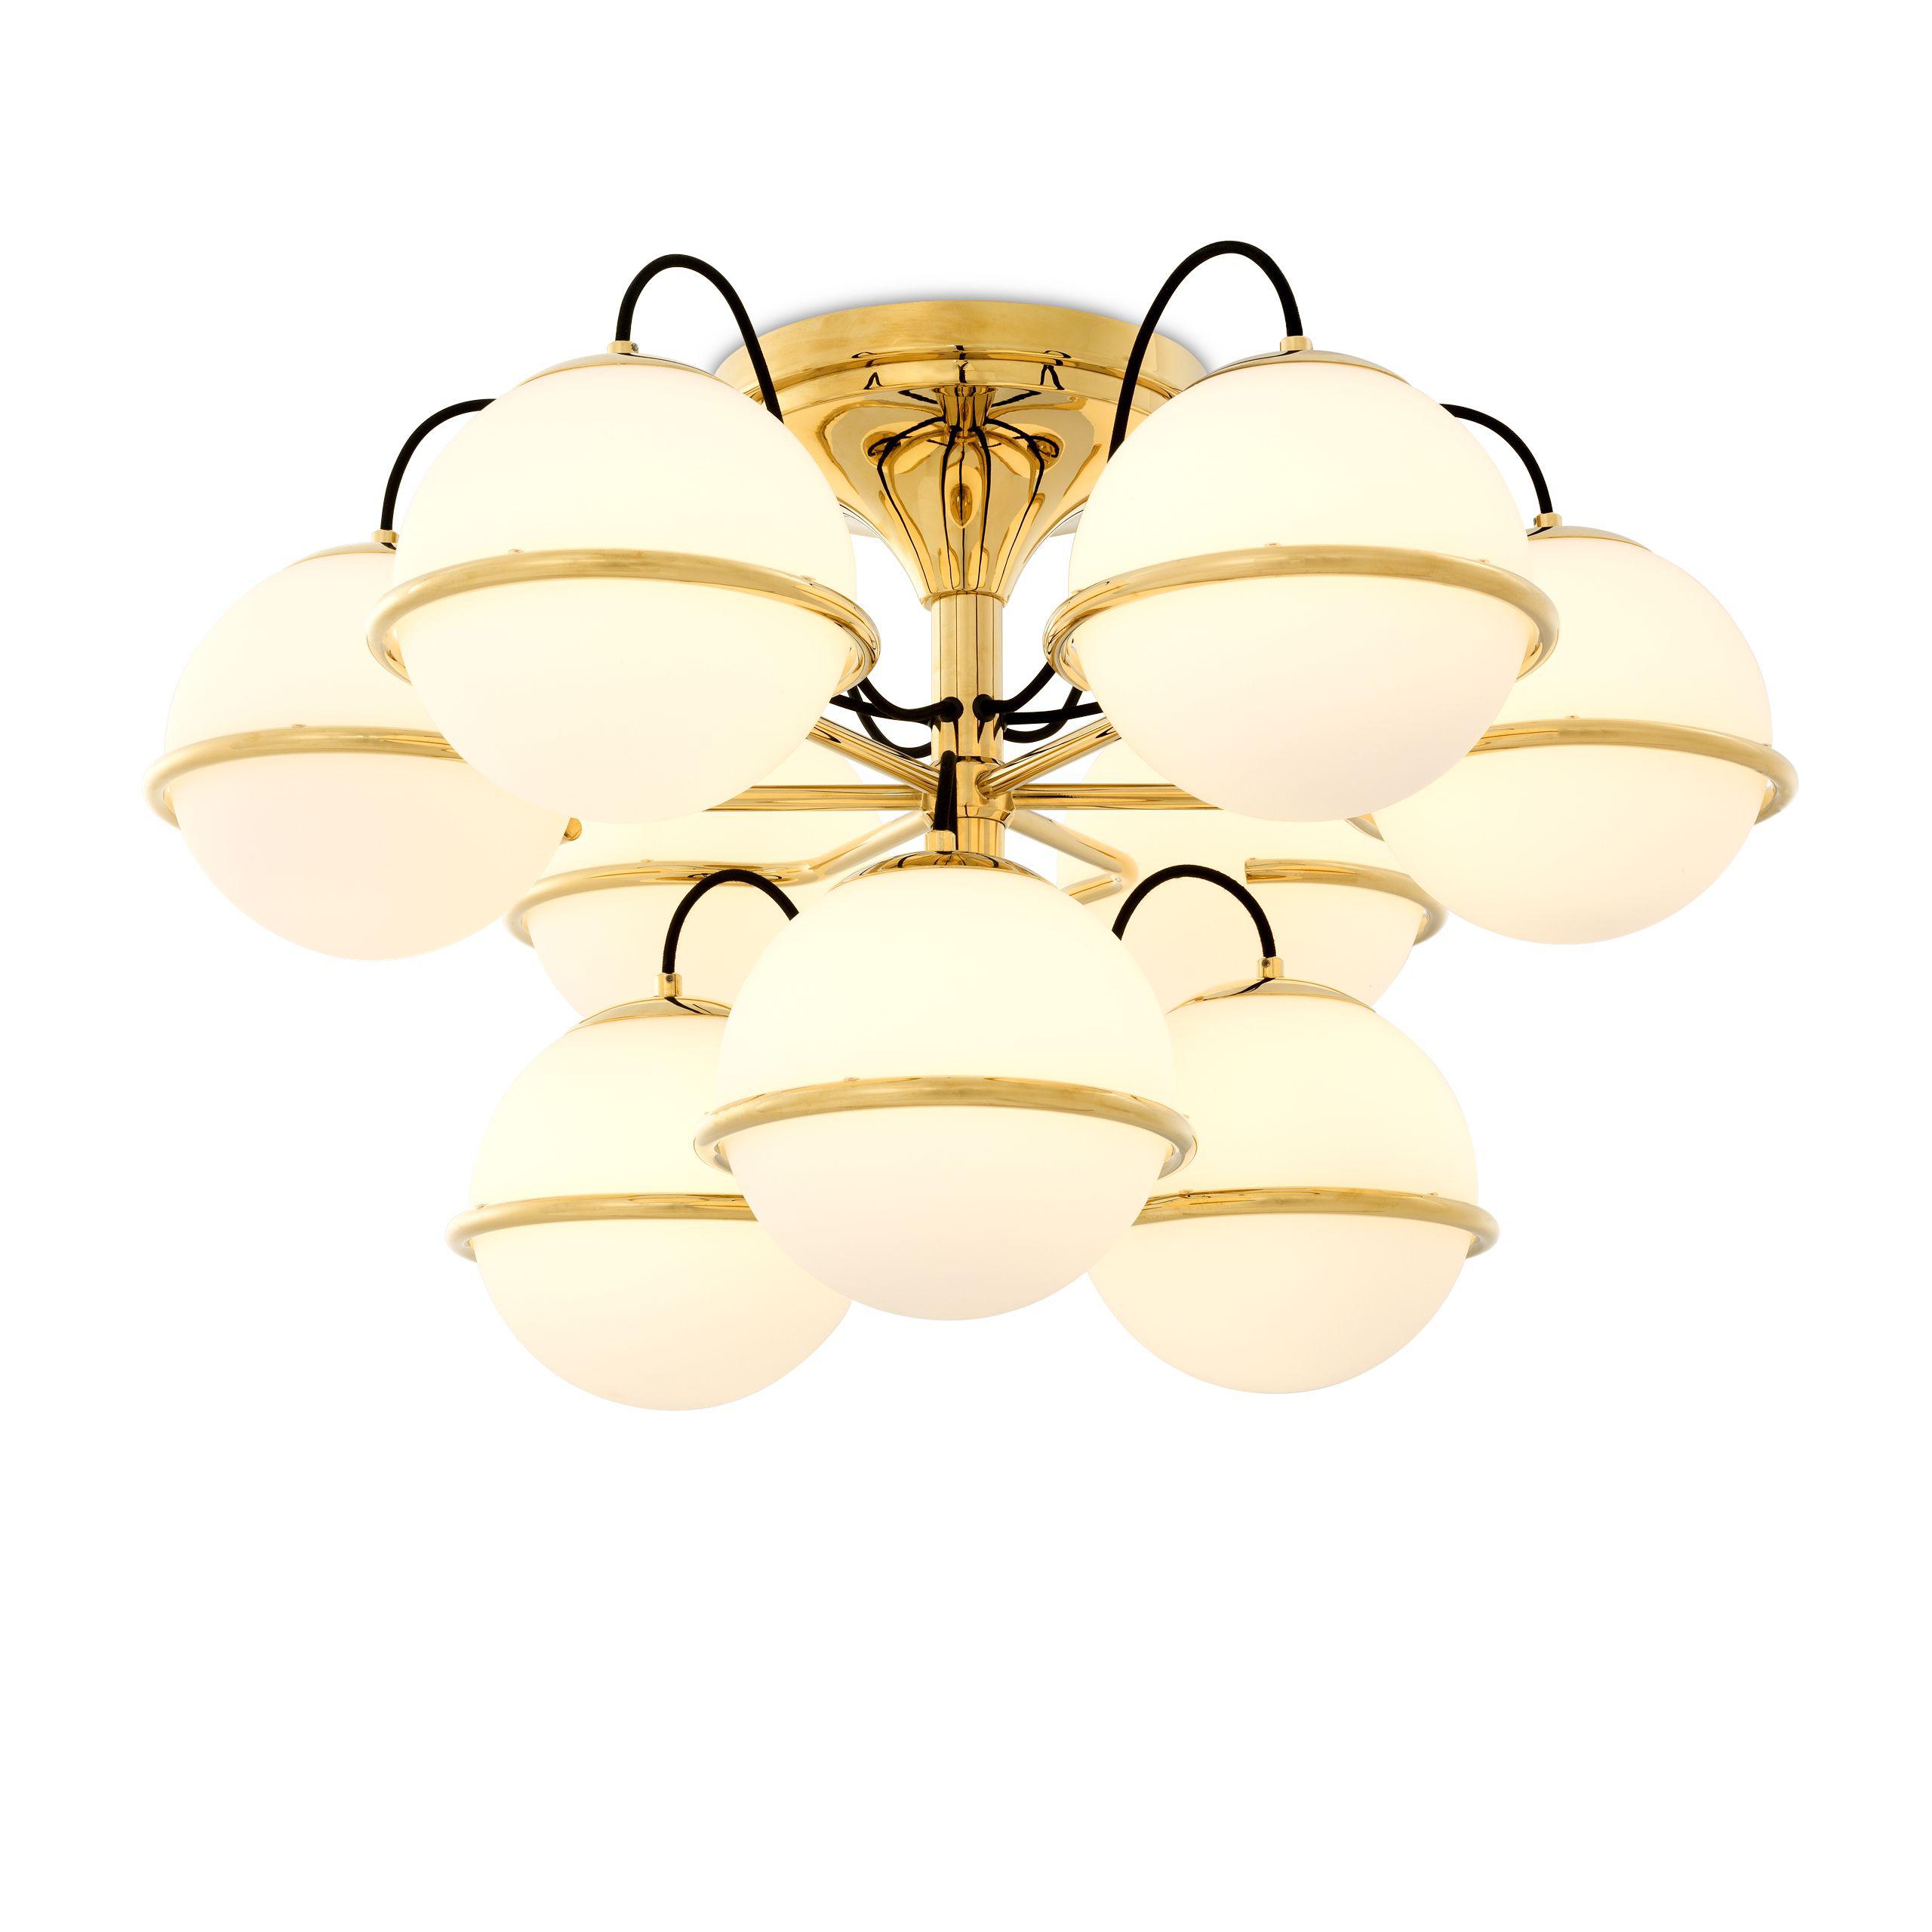 Купить Накладной светильник Ceiling Lamp Nerano в интернет-магазине roooms.ru